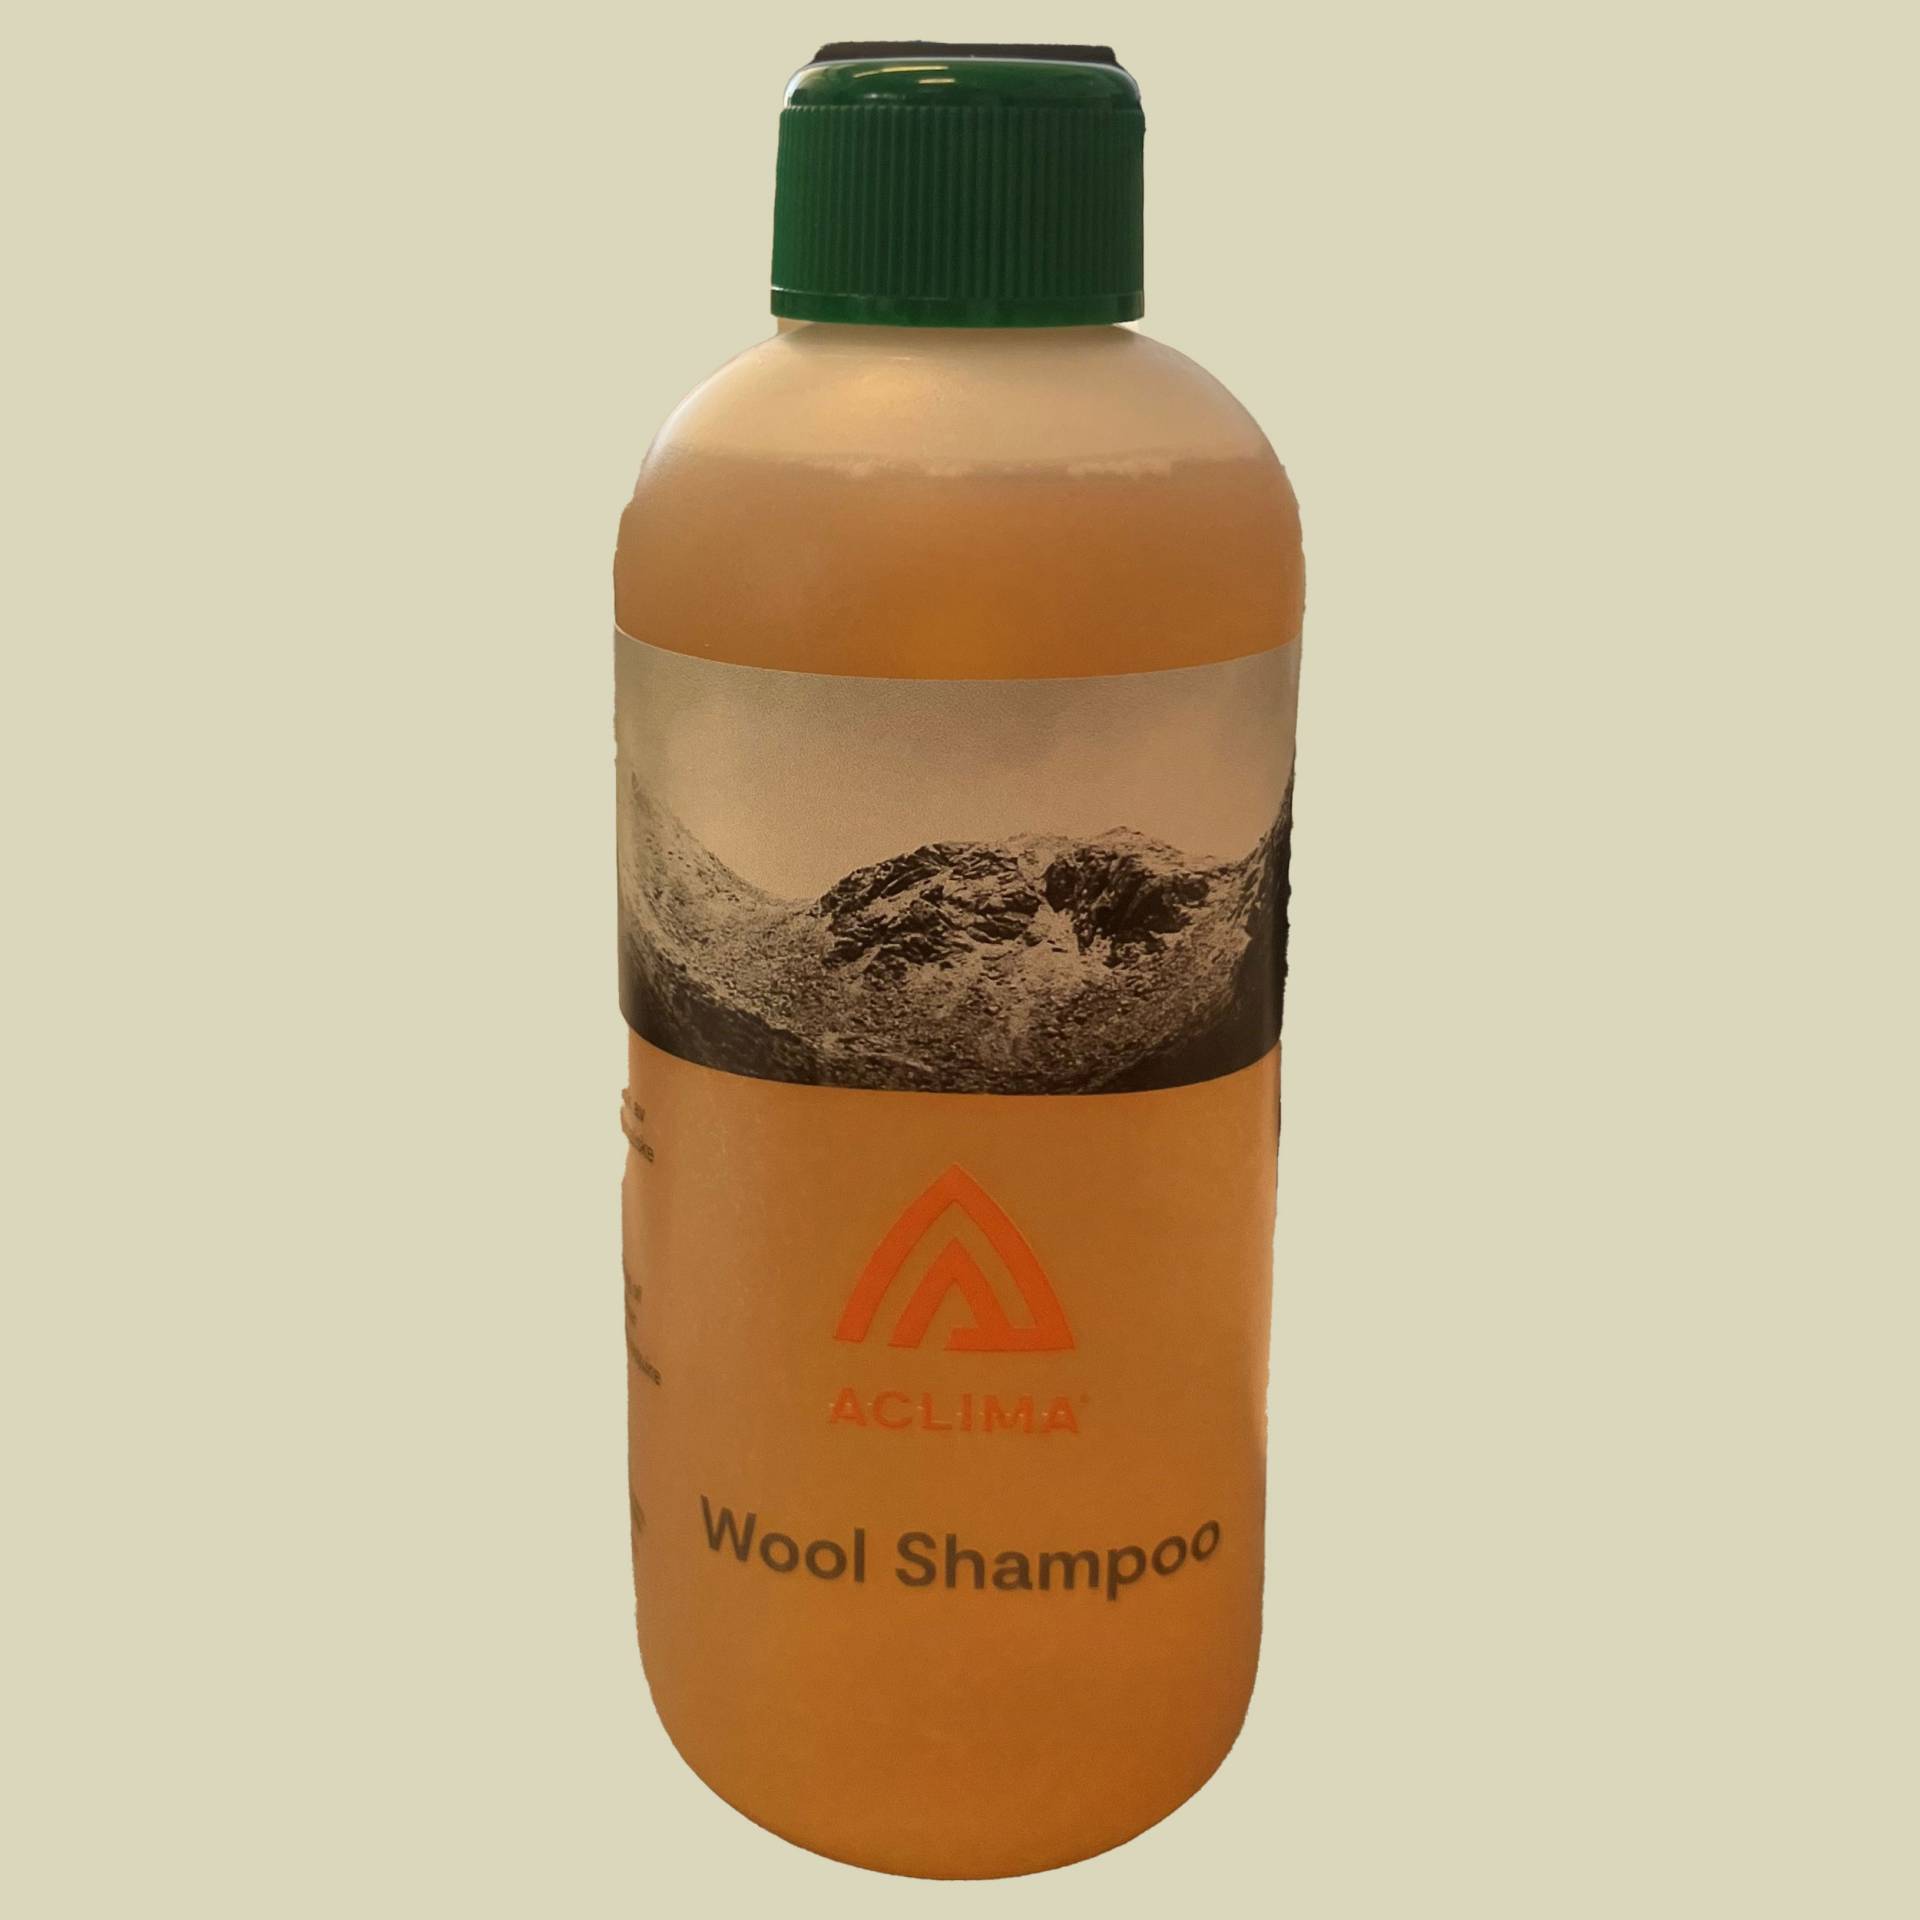 Wool Shampoo 300ml Inhalt 300 ml von aclima